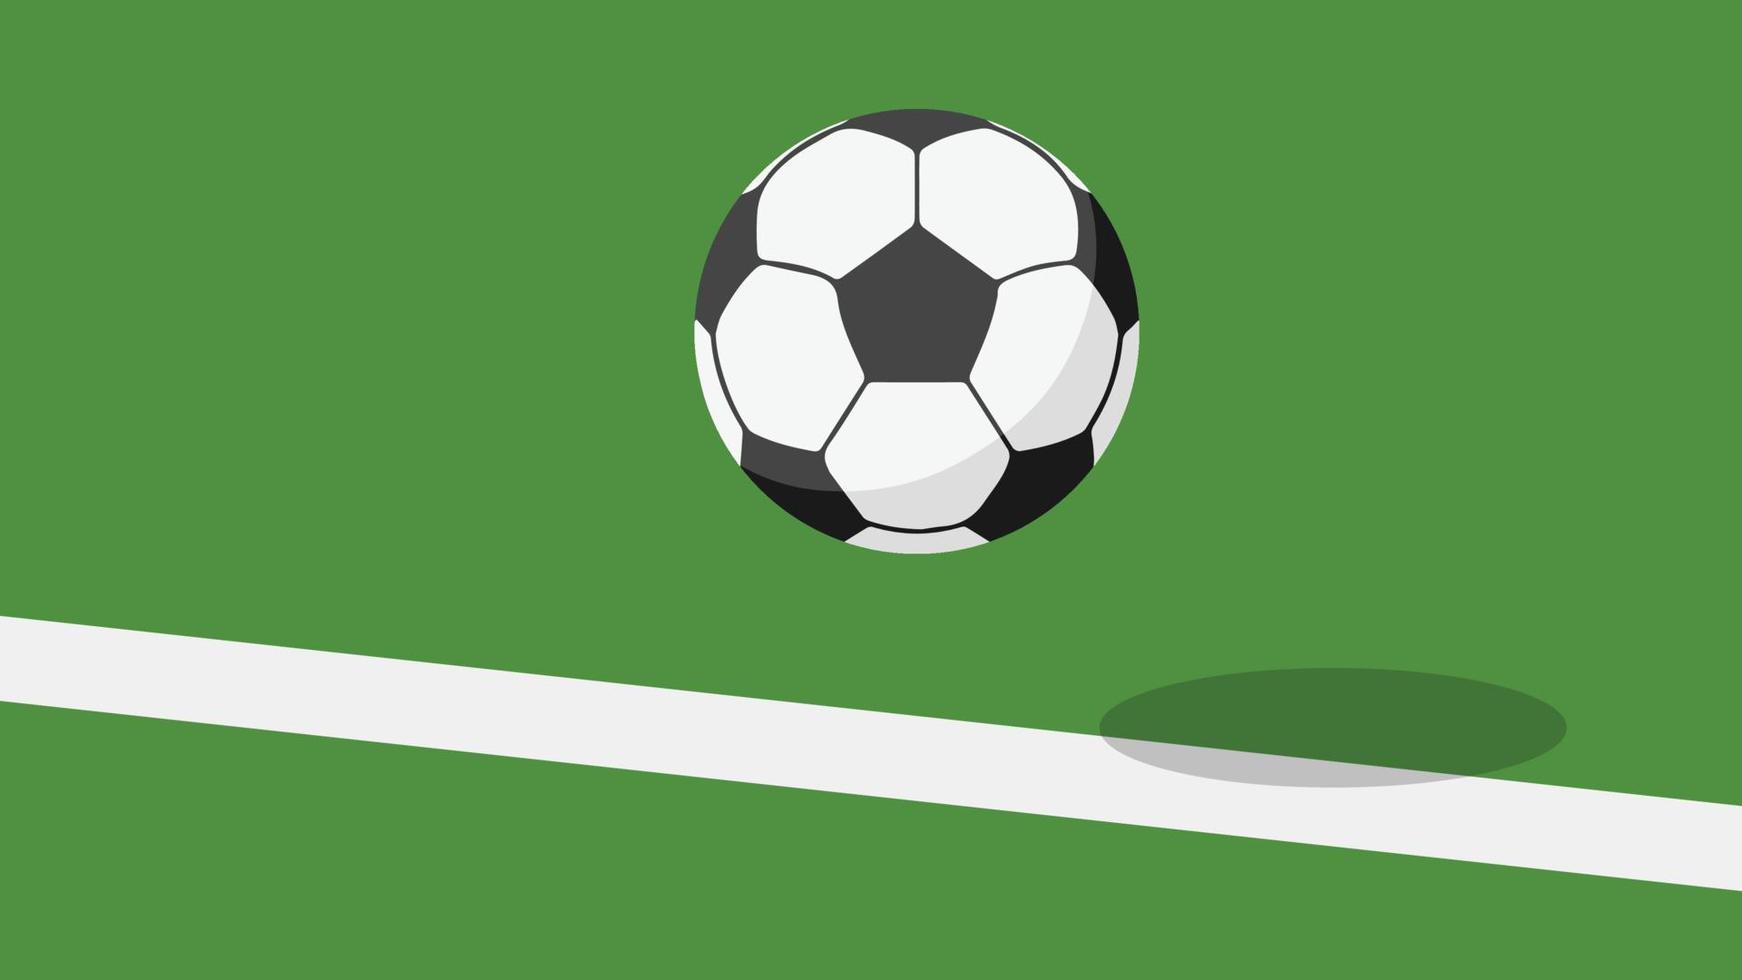 vectores de futbol cartel de fútbol espacio libre para texto. fondo de pantalla. fútbol en el campo.